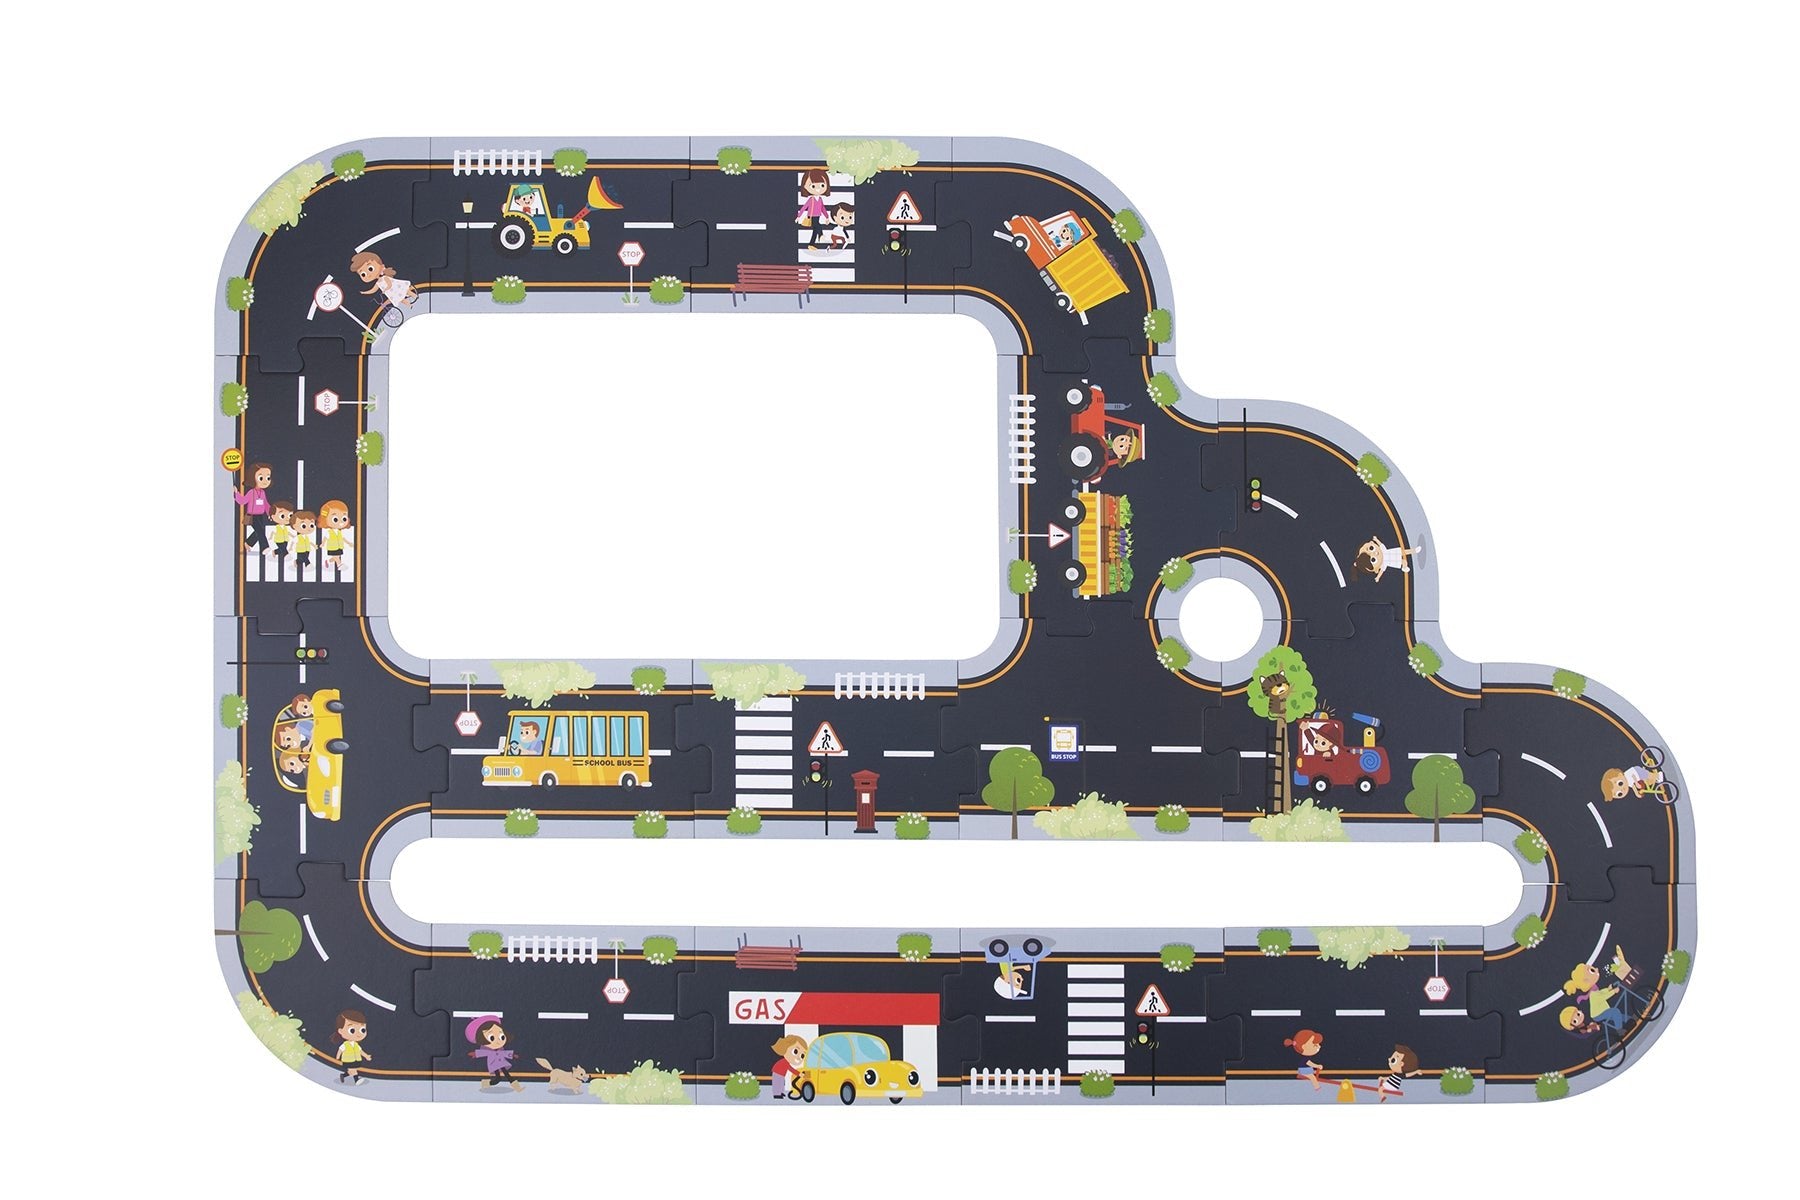 City Road Puzzle Playmat